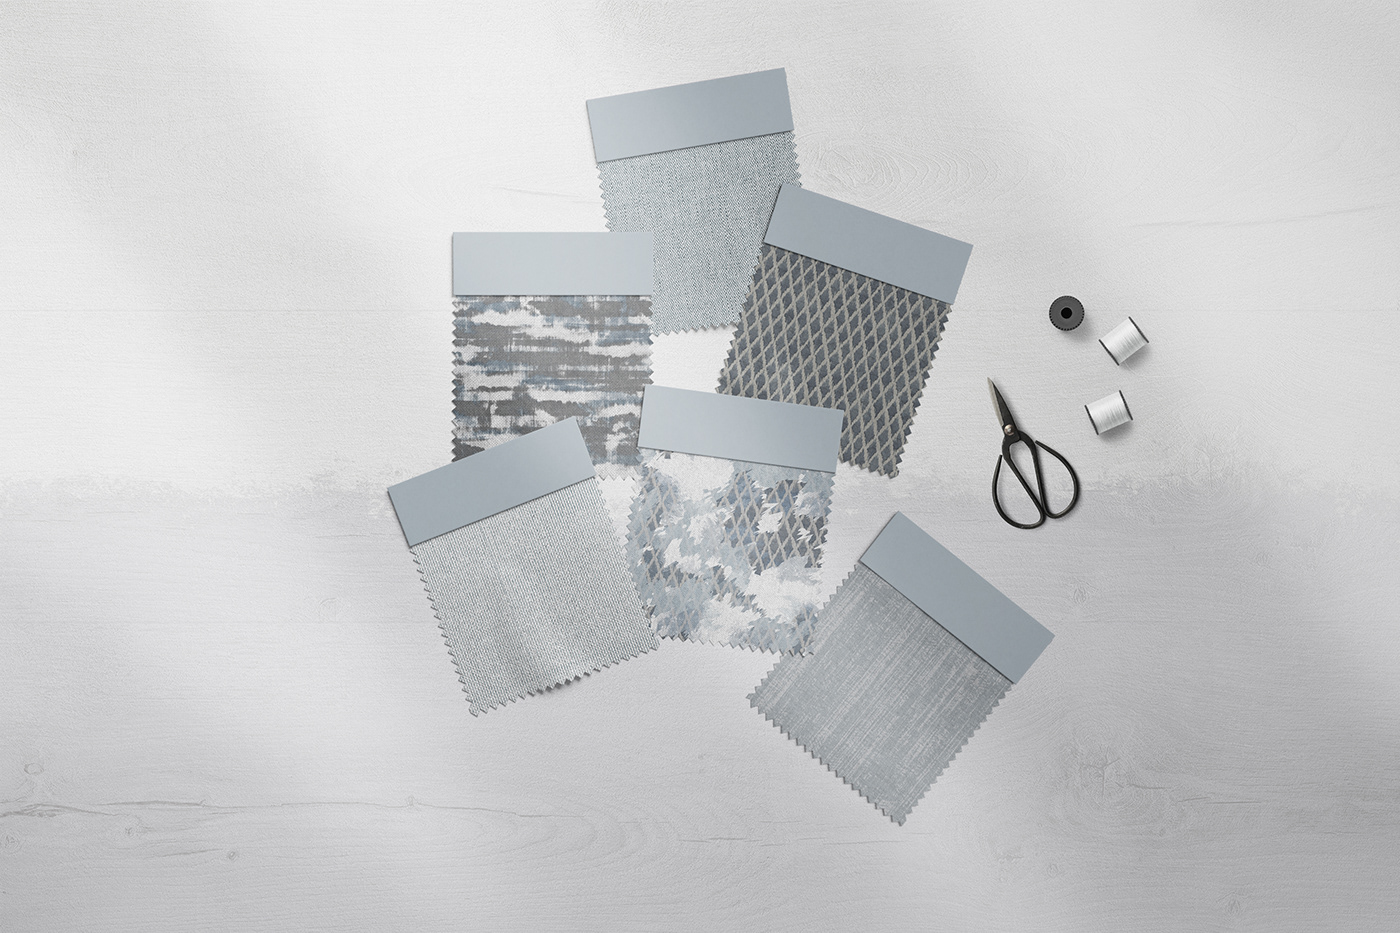 3ds max design fabric interior design  pattern print textile textile design 